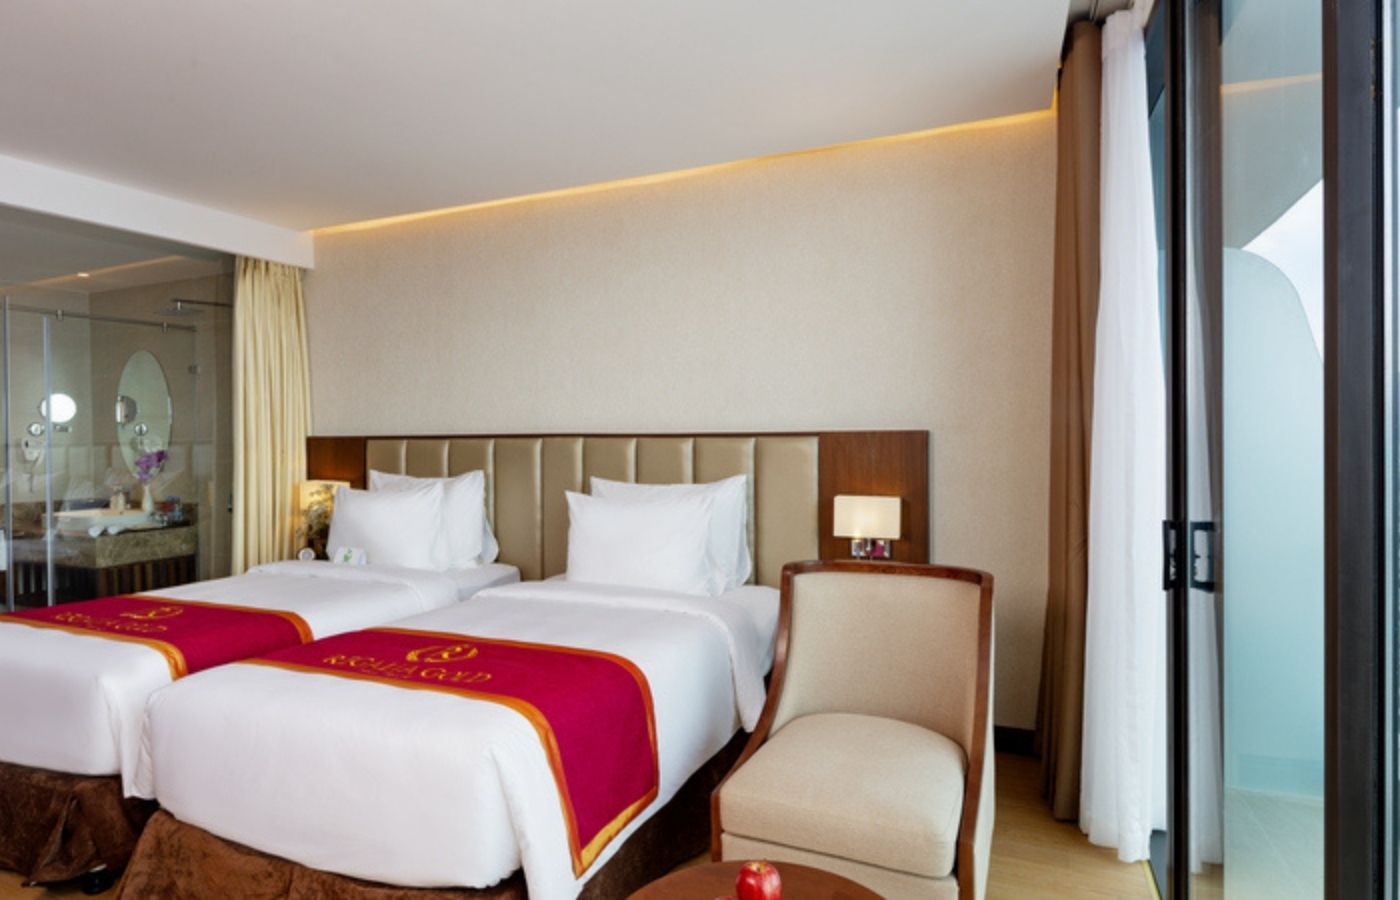 Regalia Gold Hotel-Khách sạn 5 sao có hồ bơi vô cực ở tầng 40 9